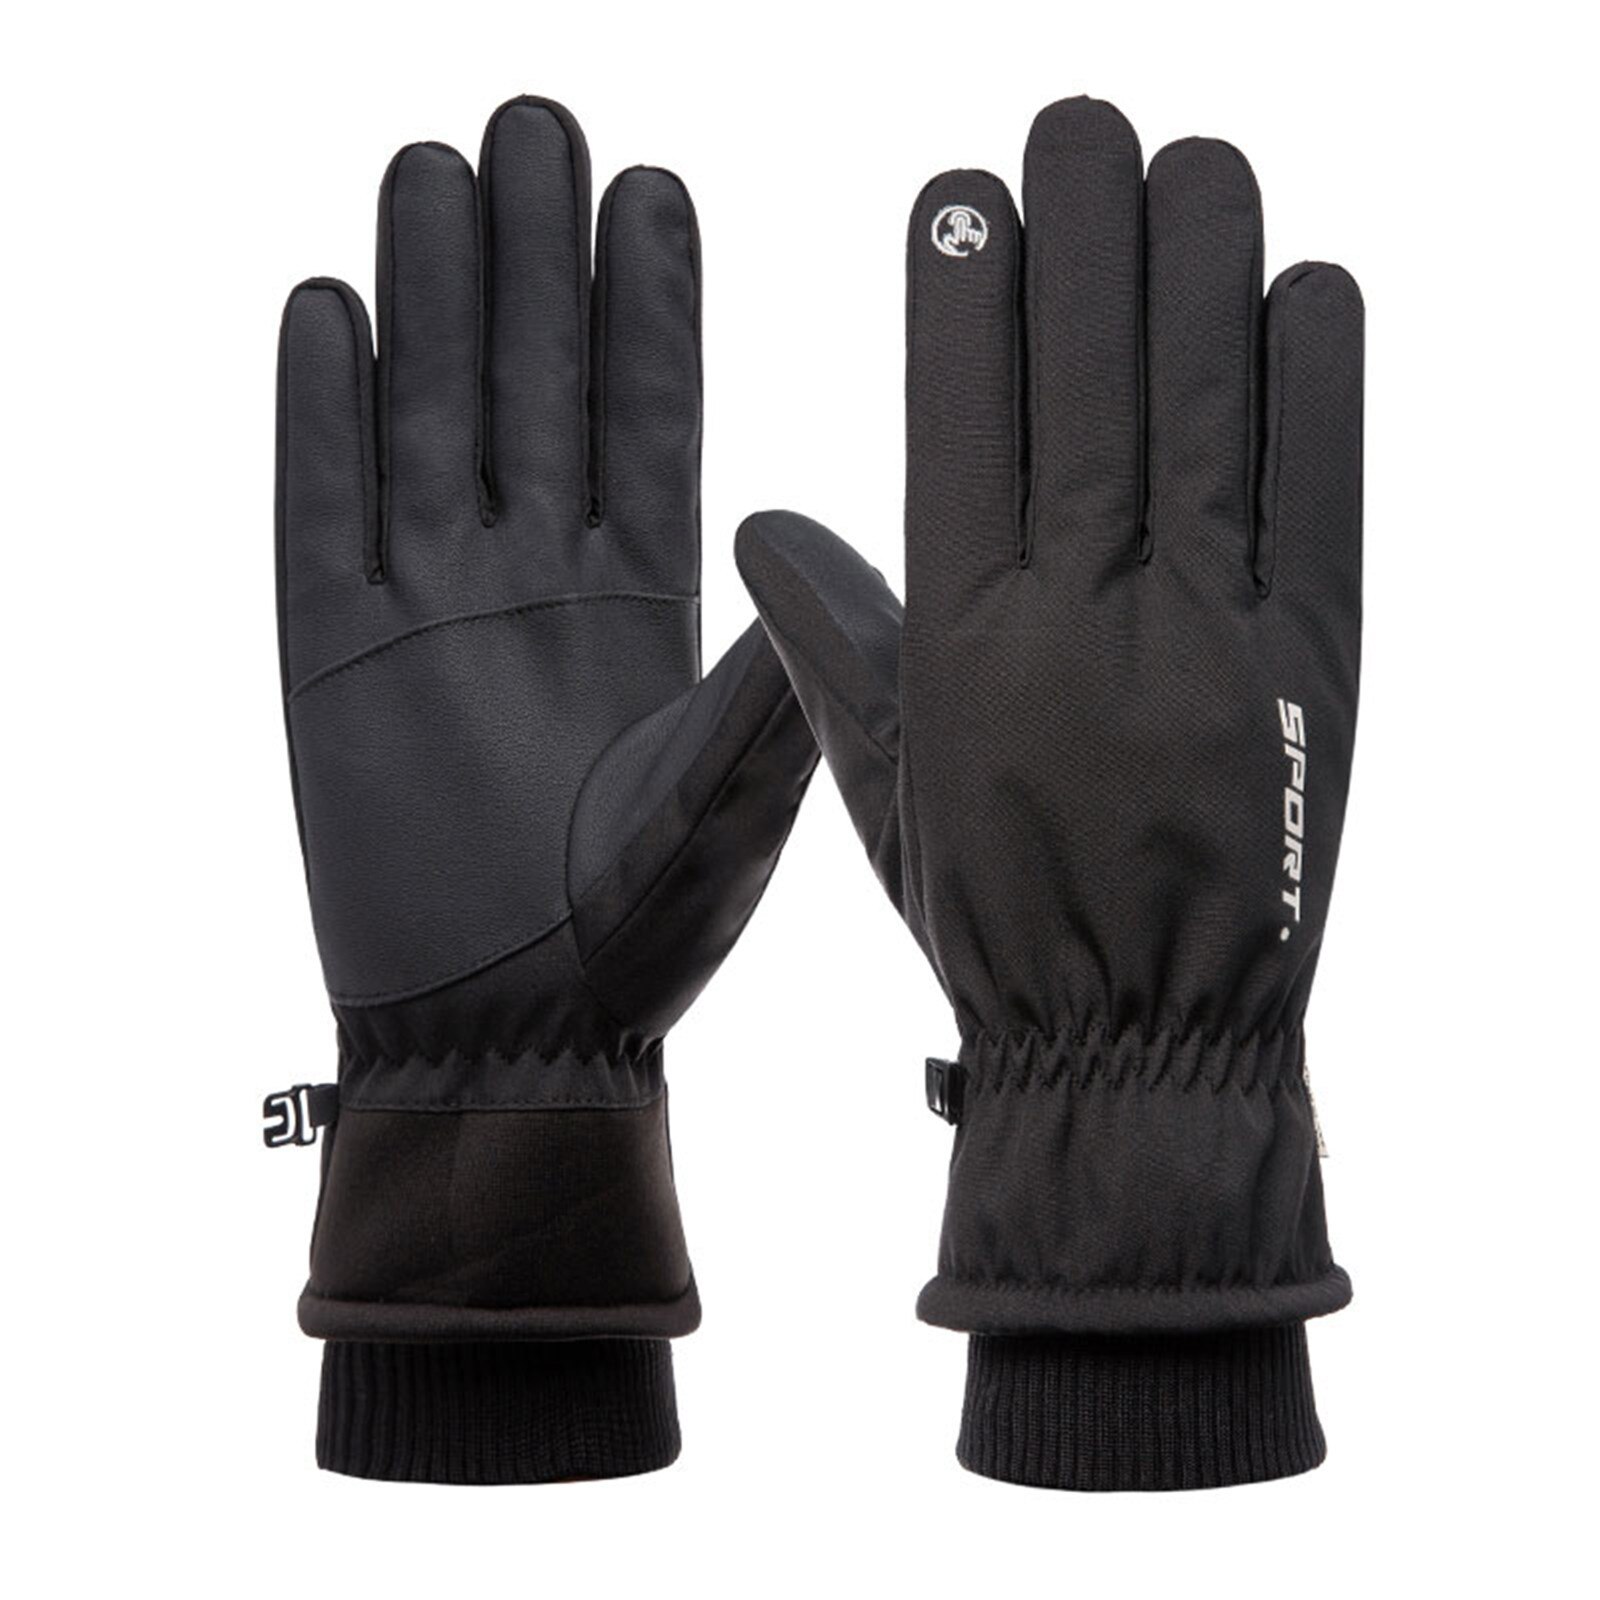 Winter Handschoenen Touchscreen Handschoenen Thermische Handschoenen Voor Skiën Fietsen Klimmen Trendy #41